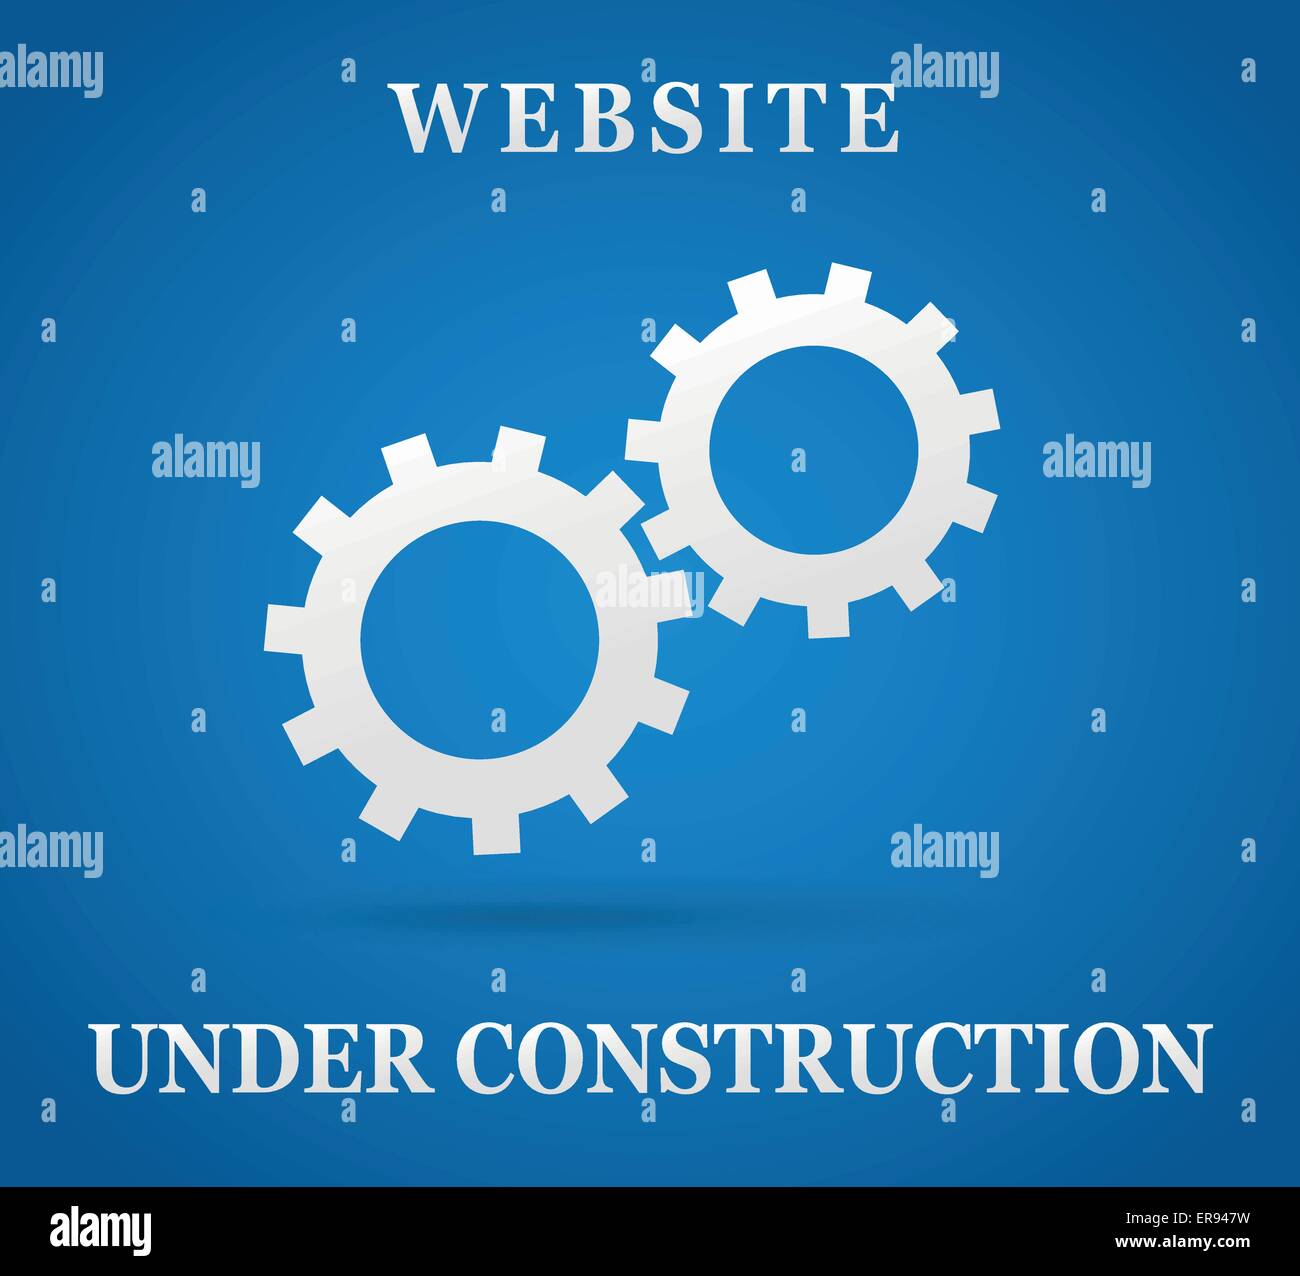 Illustrazione Vettoriale di sito web in costruzione su sfondo blu Illustrazione Vettoriale